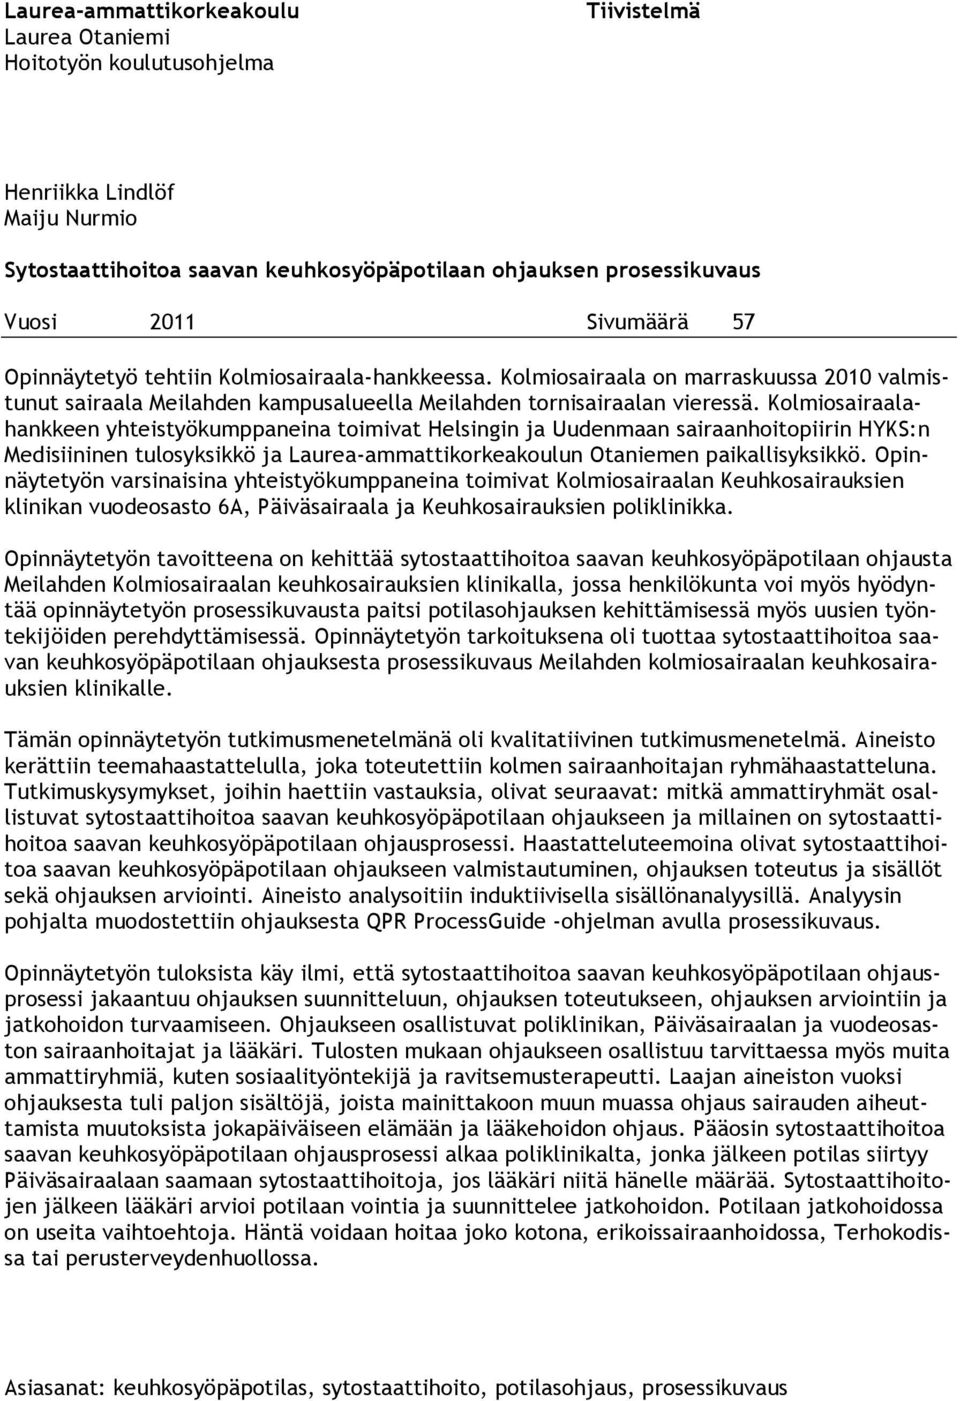 Kolmiosairaalahankkeen yhteistyökumppaneina toimivat Helsingin ja Uudenmaan sairaanhoitopiirin HYKS:n Medisiininen tulosyksikkö ja Laurea-ammattikorkeakoulun Otaniemen paikallisyksikkö.